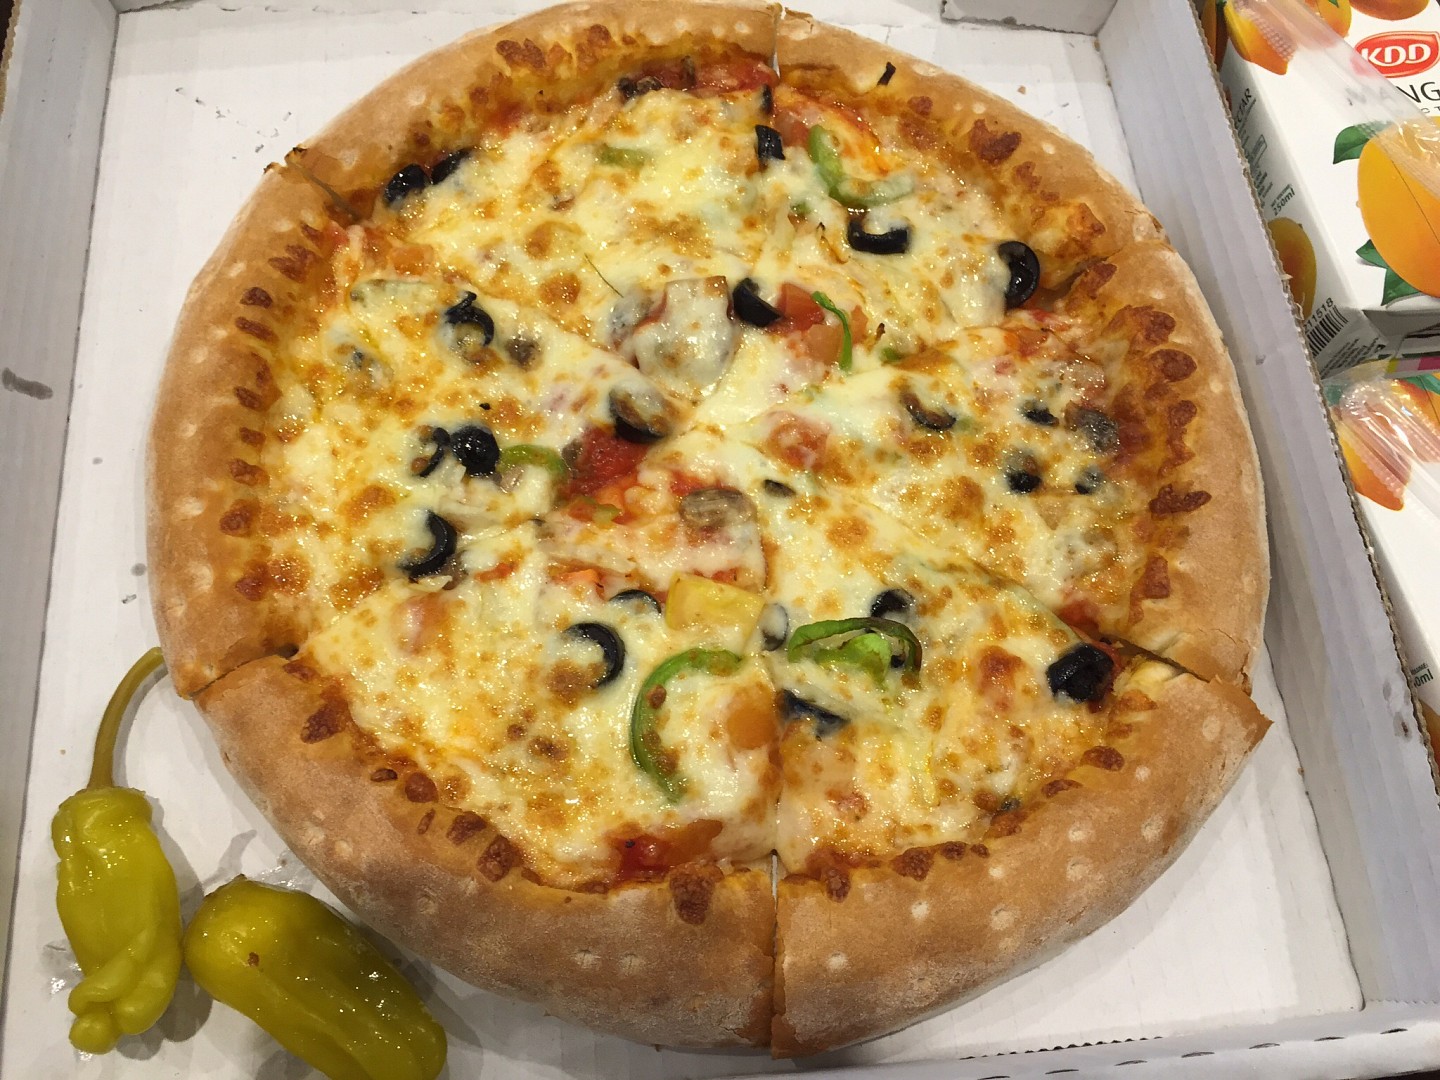 Veg pizza @ Papa Johns - Bahrain